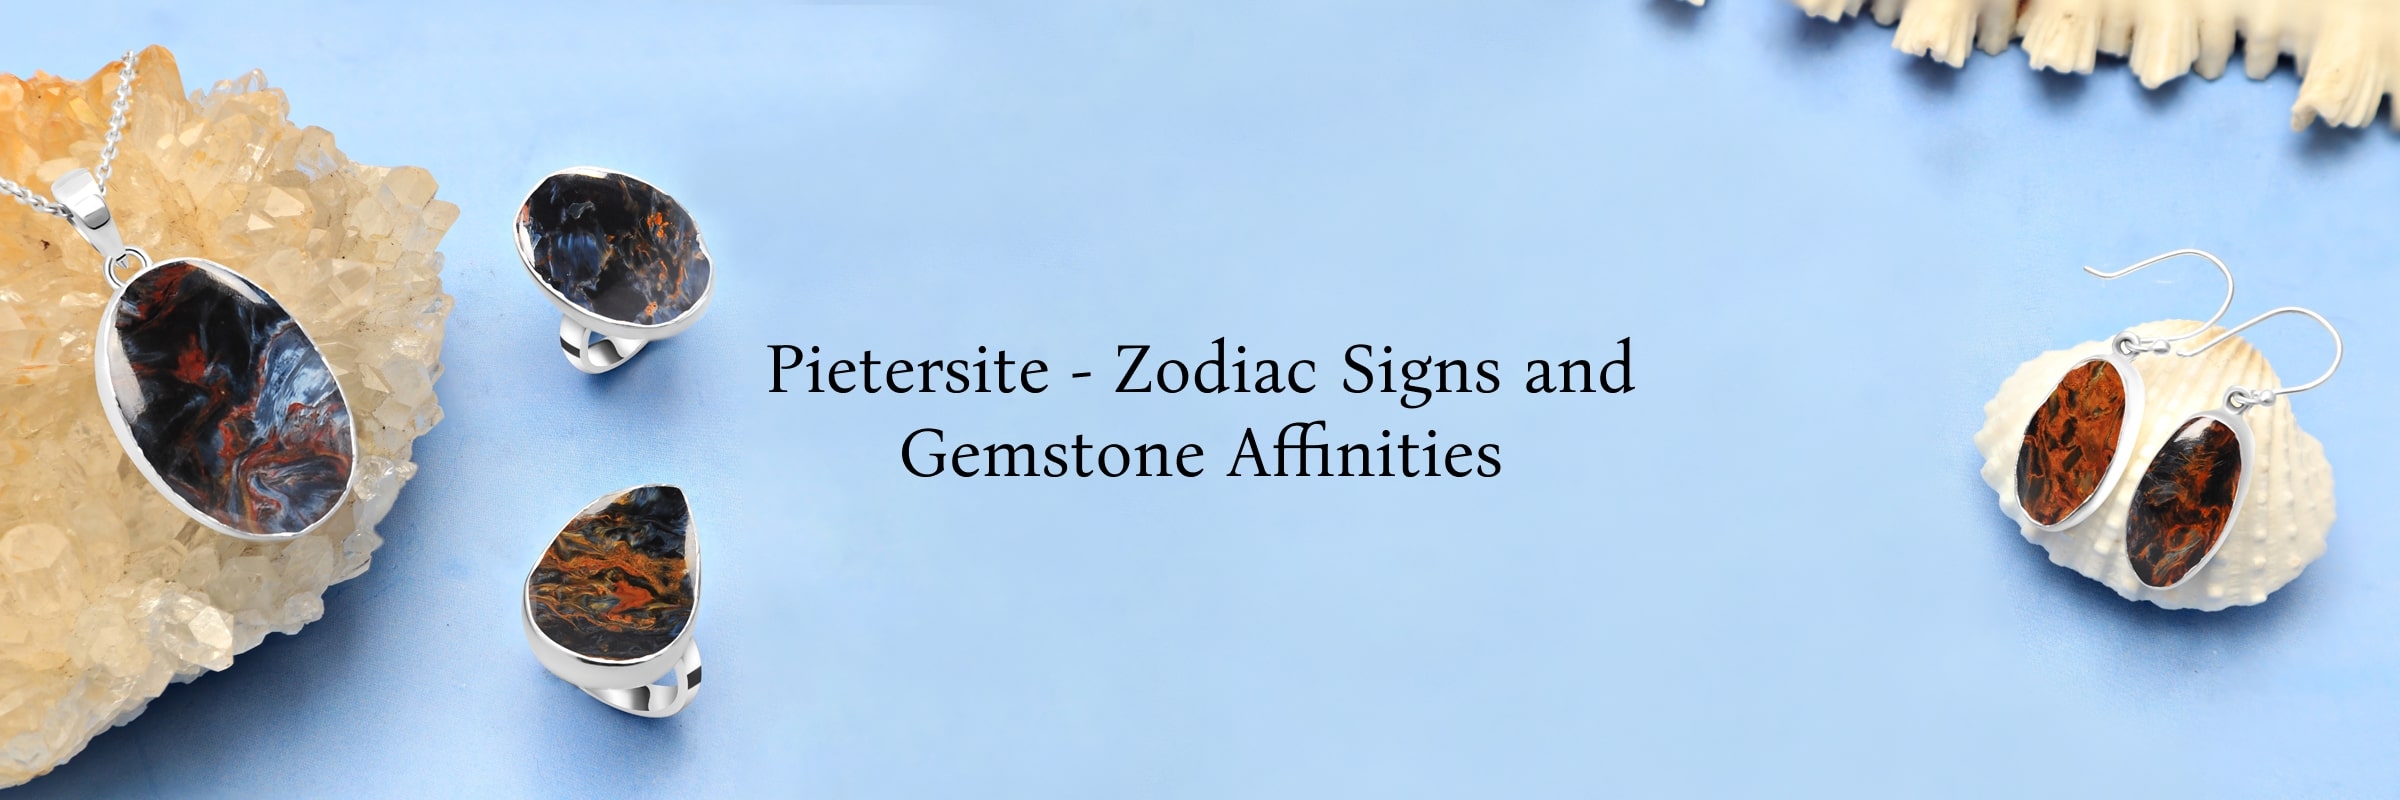 Pietersite Gem & Its Zodiac Association